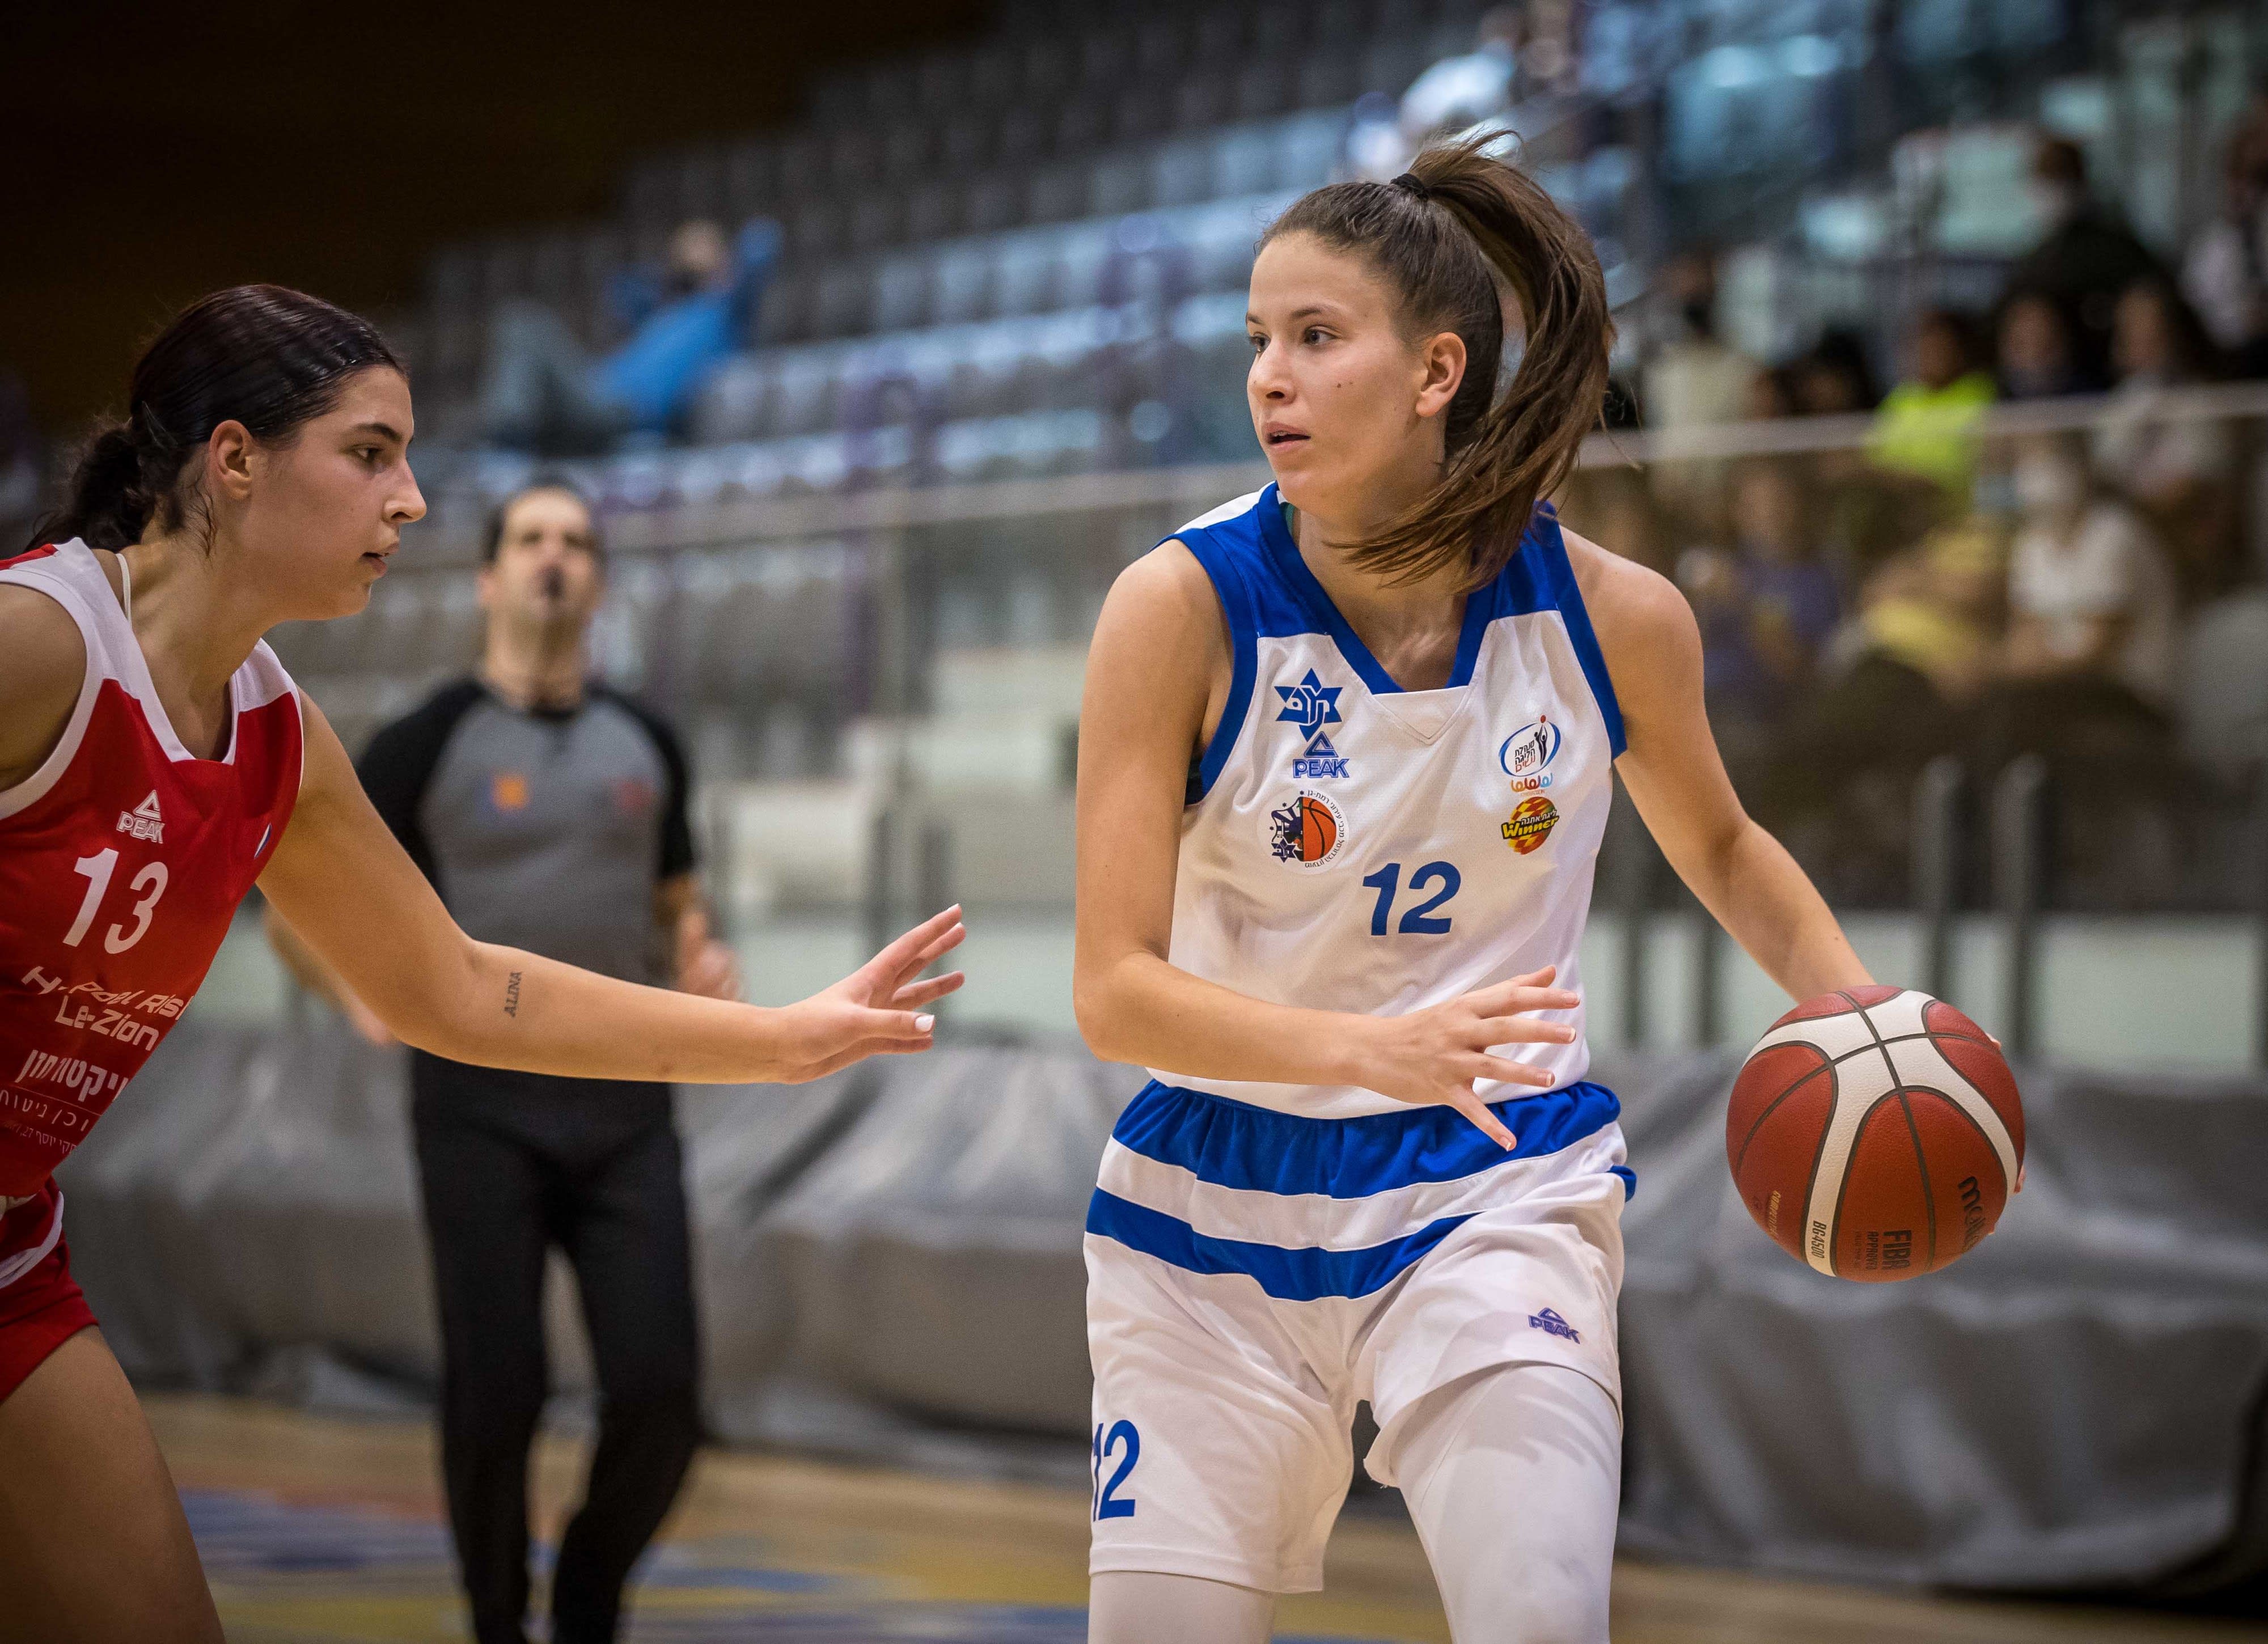 ירדן גרזון, שחקנית מכבי עירוני רמת גן